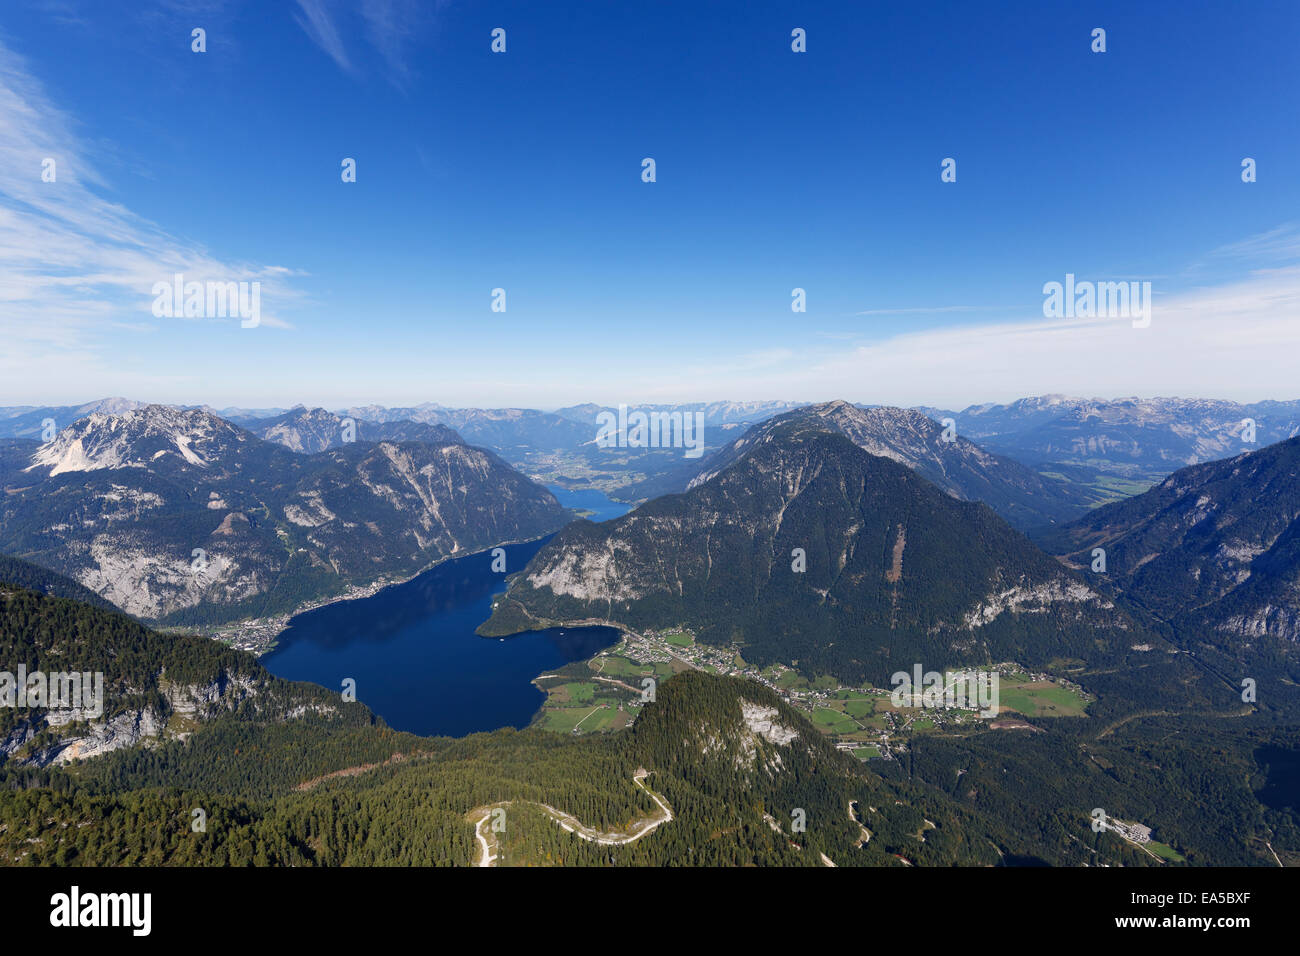 Austria, Salzkammergut, Dachstein Mountains, view on Lake Hallstein Stock Photo